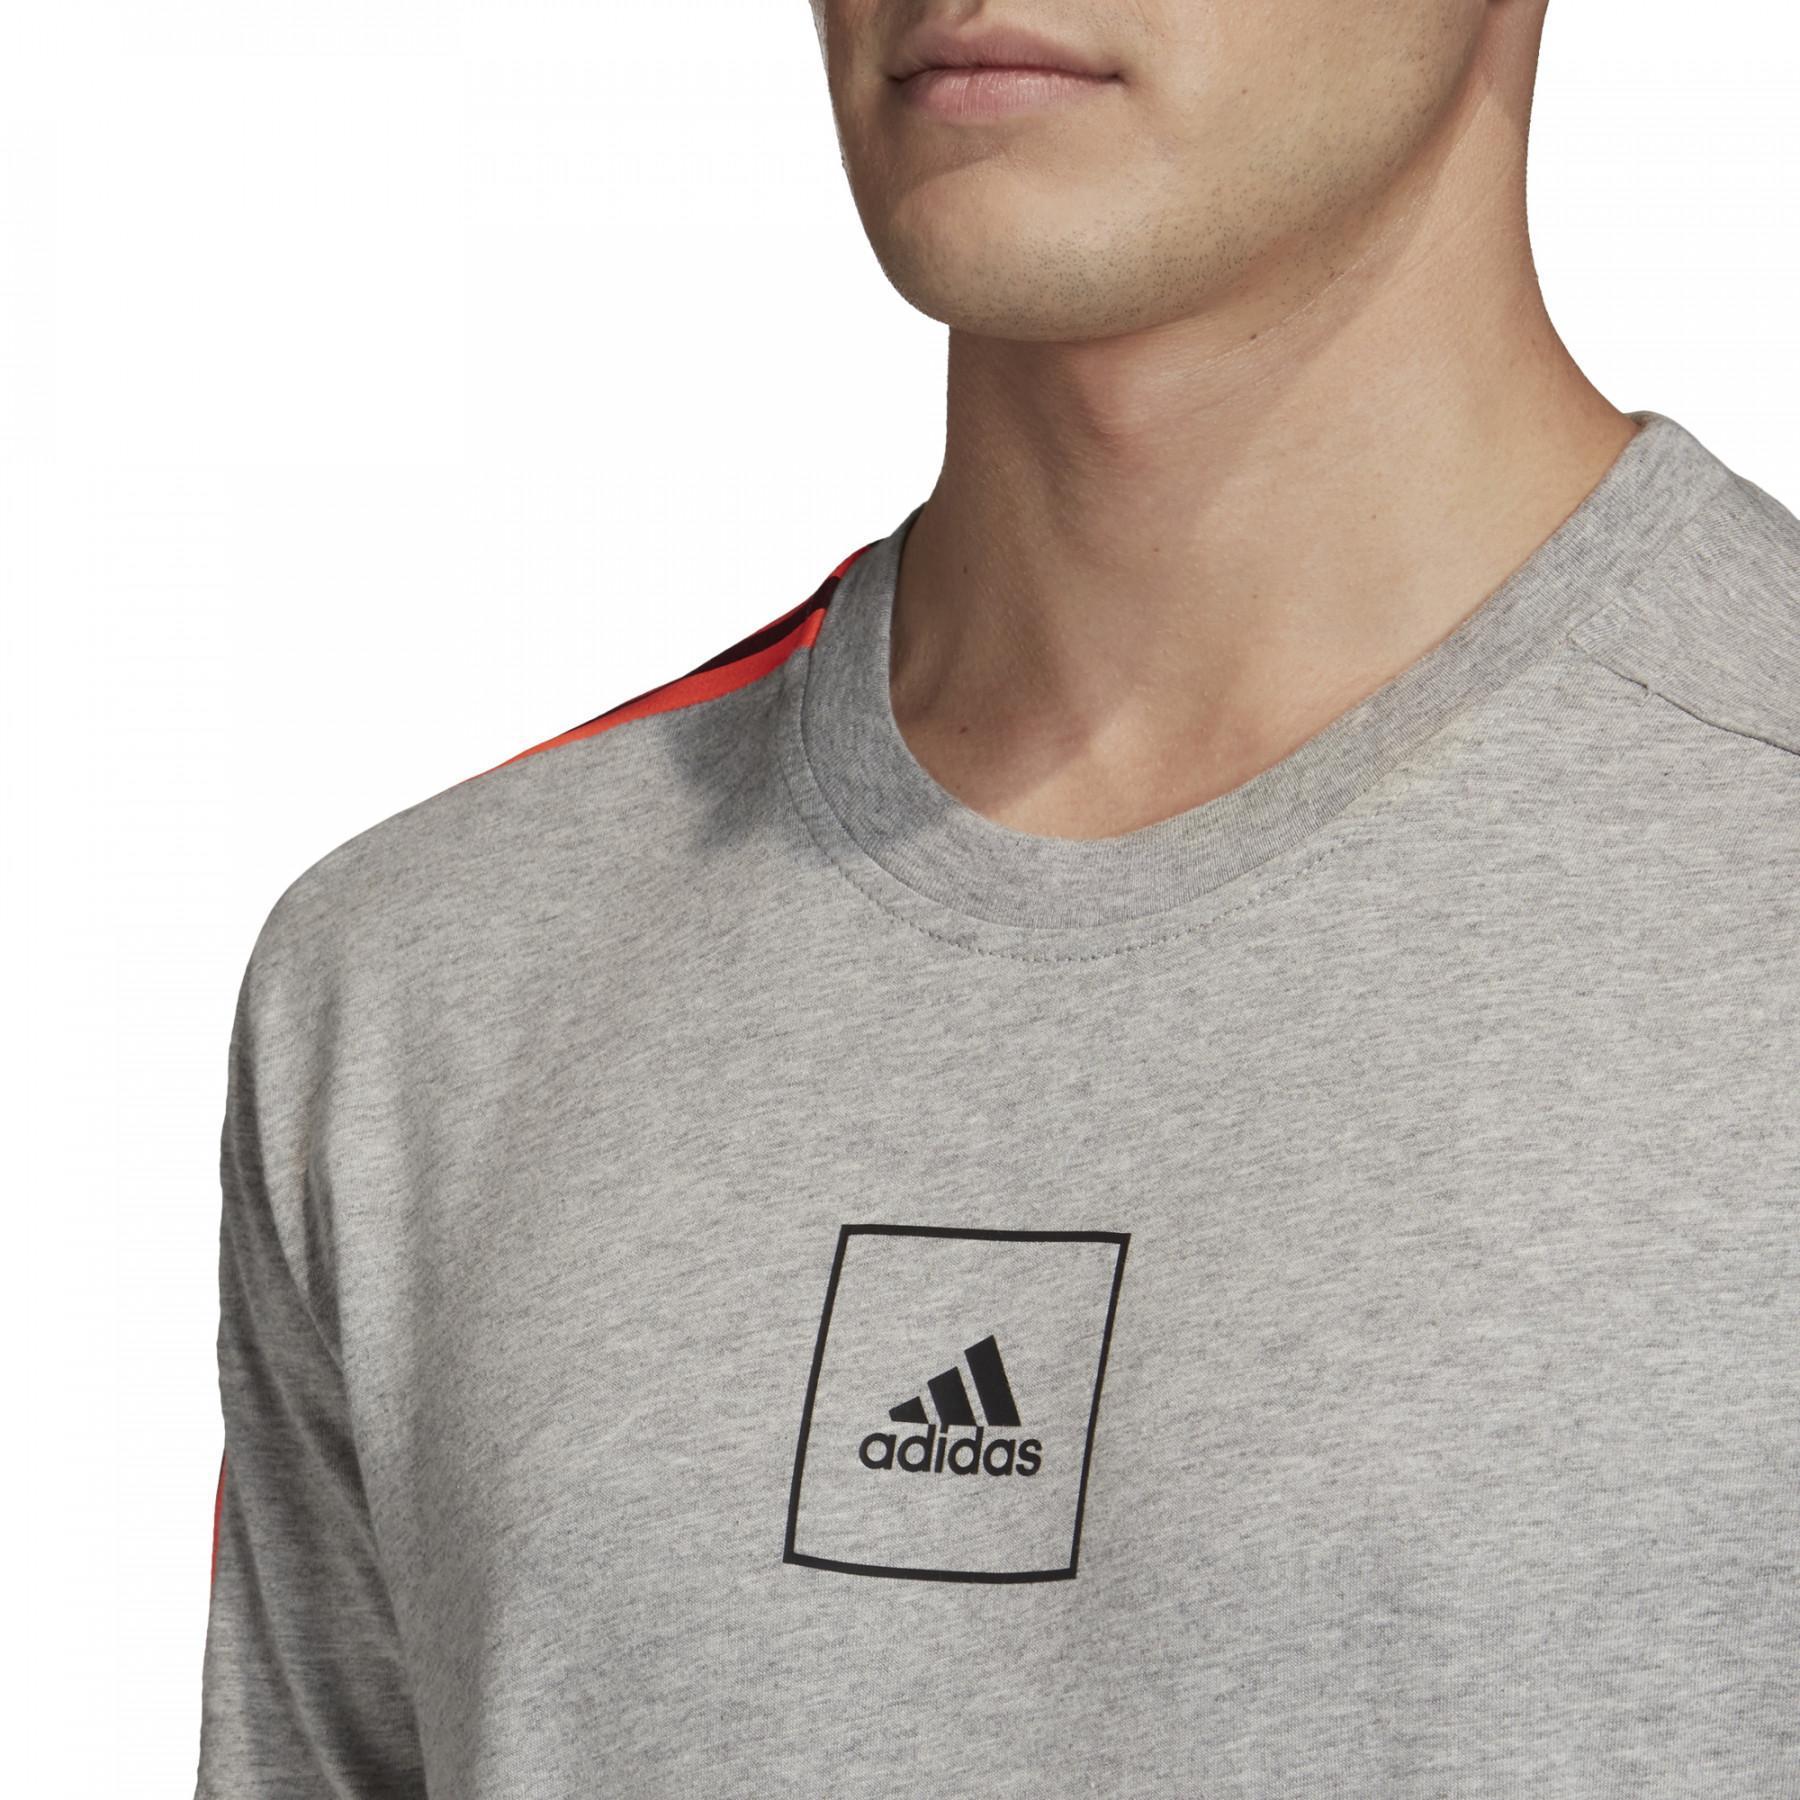 Camiseta adidas 3-Stripes